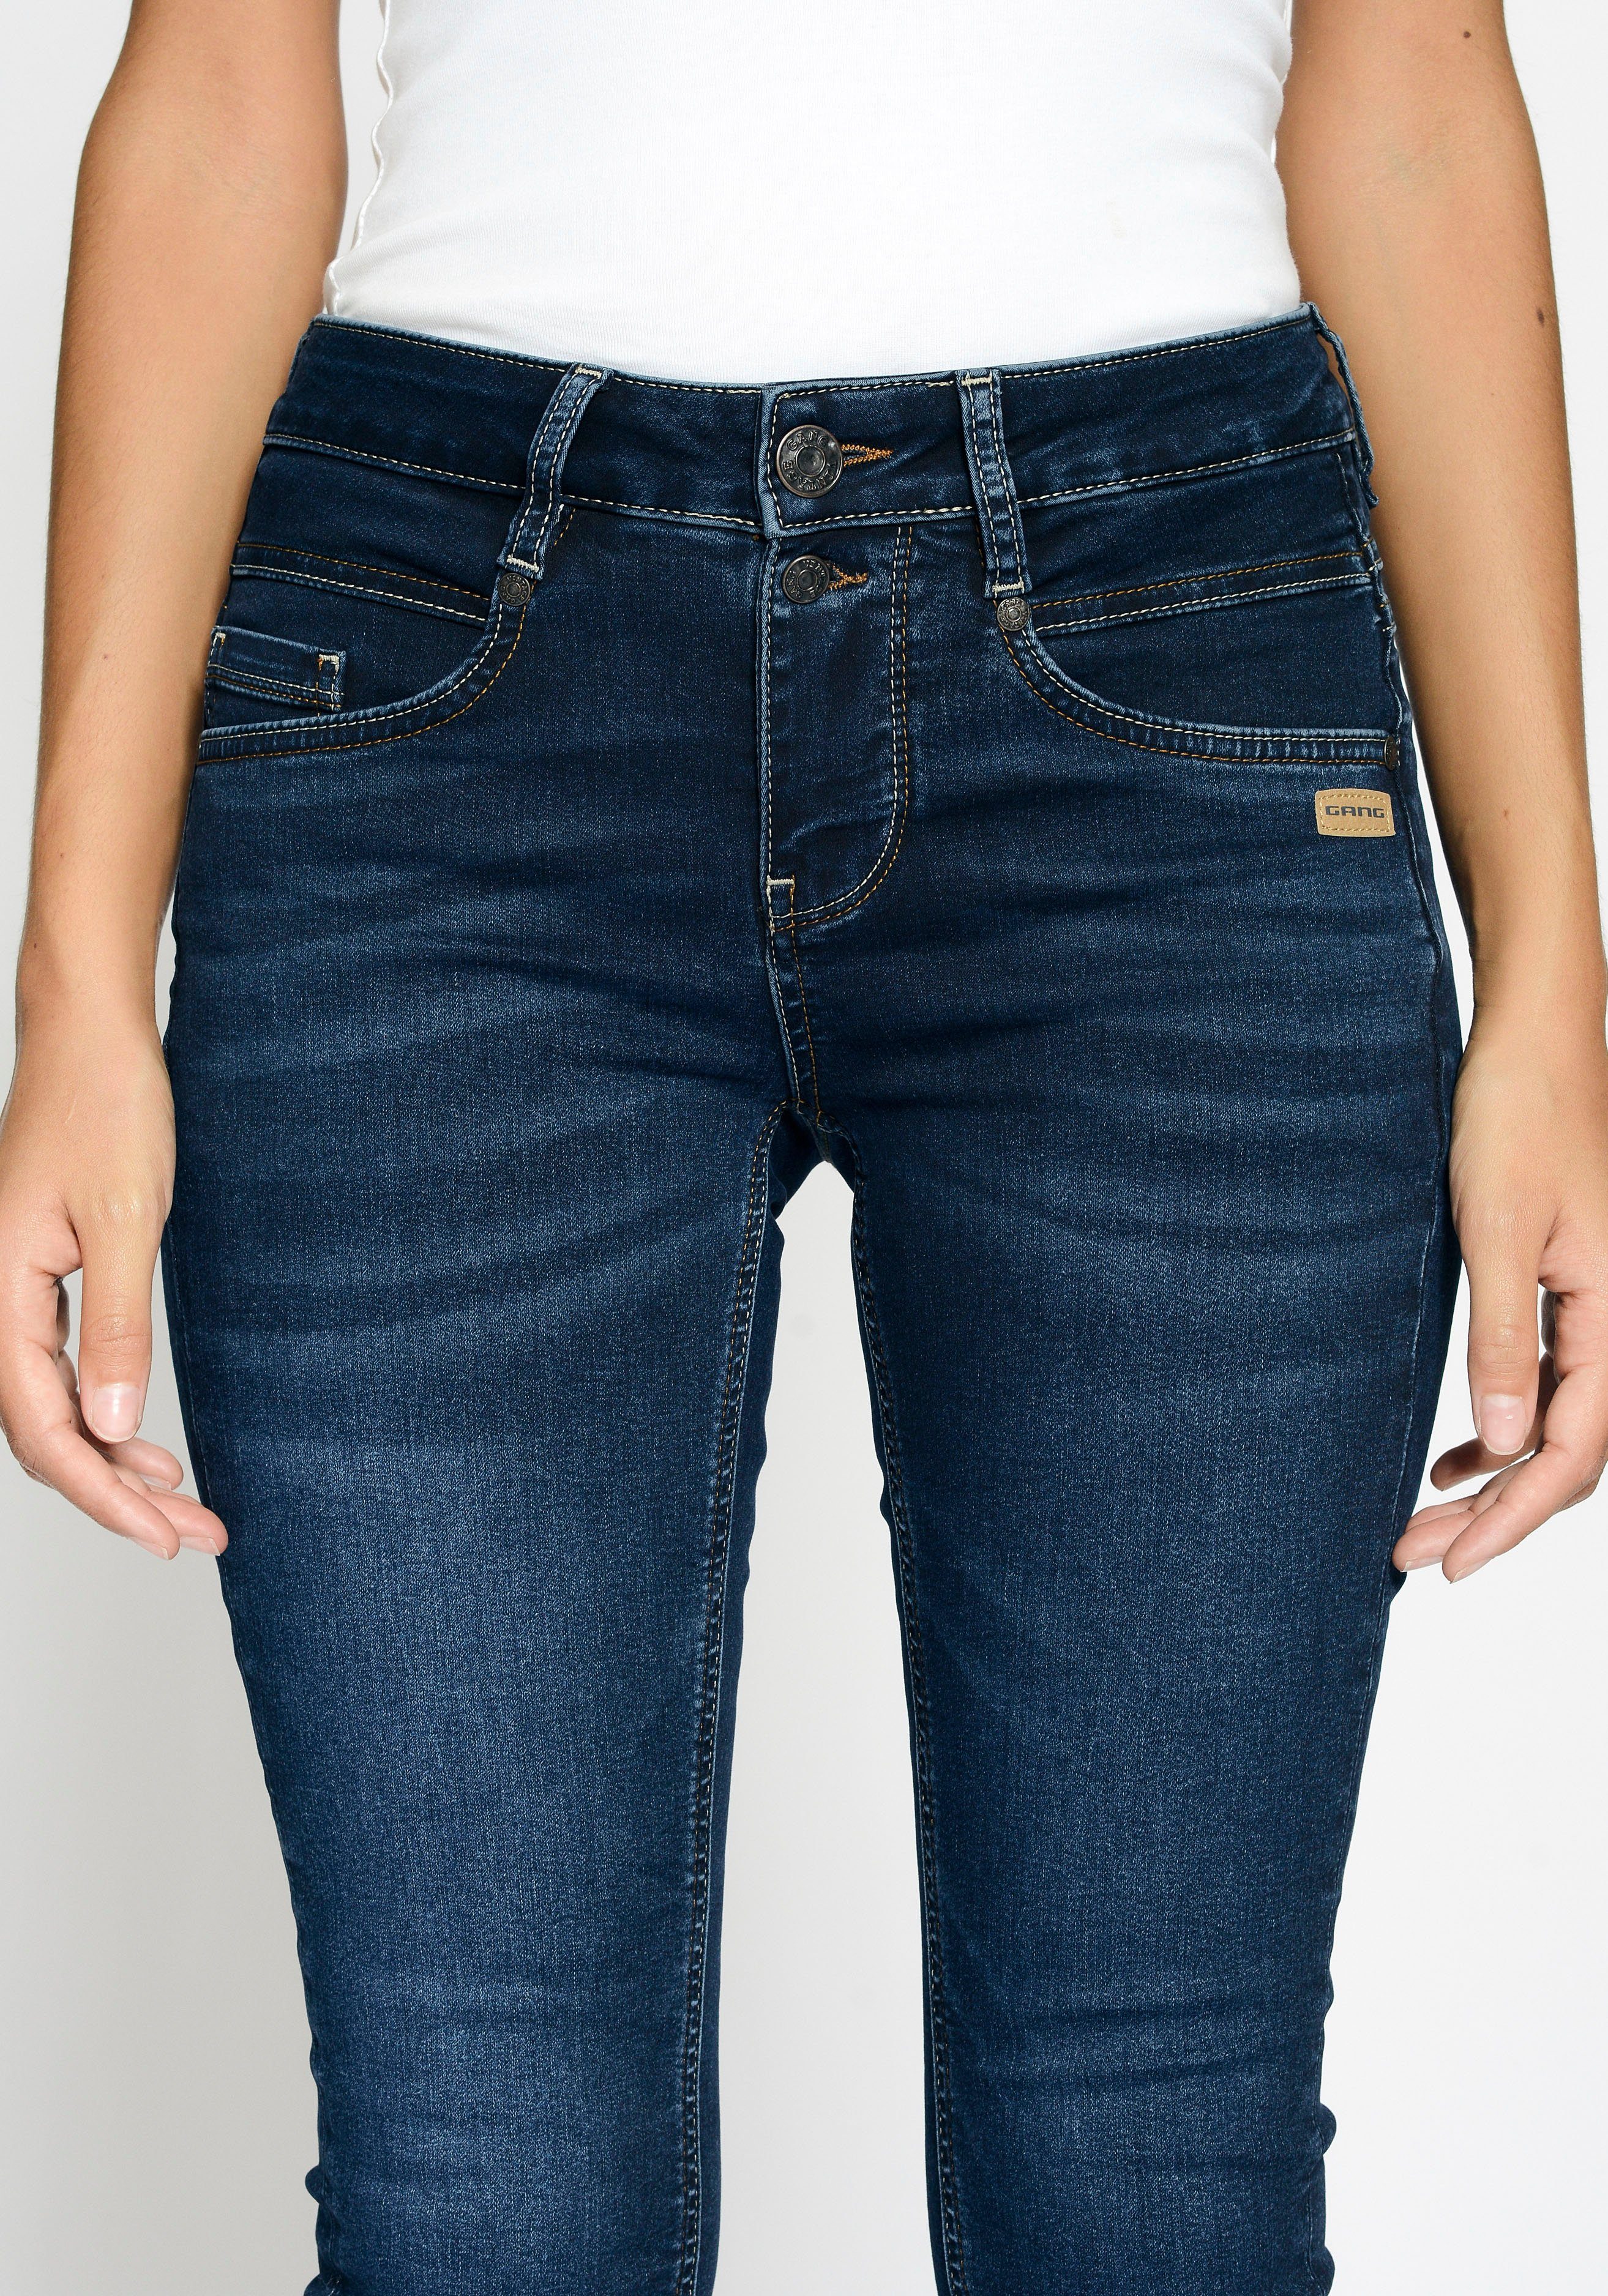 GANG Skinny-fit-Jeans 94MORA dark blue vorne 3-Knopf-Verschluss deep mit und Passe